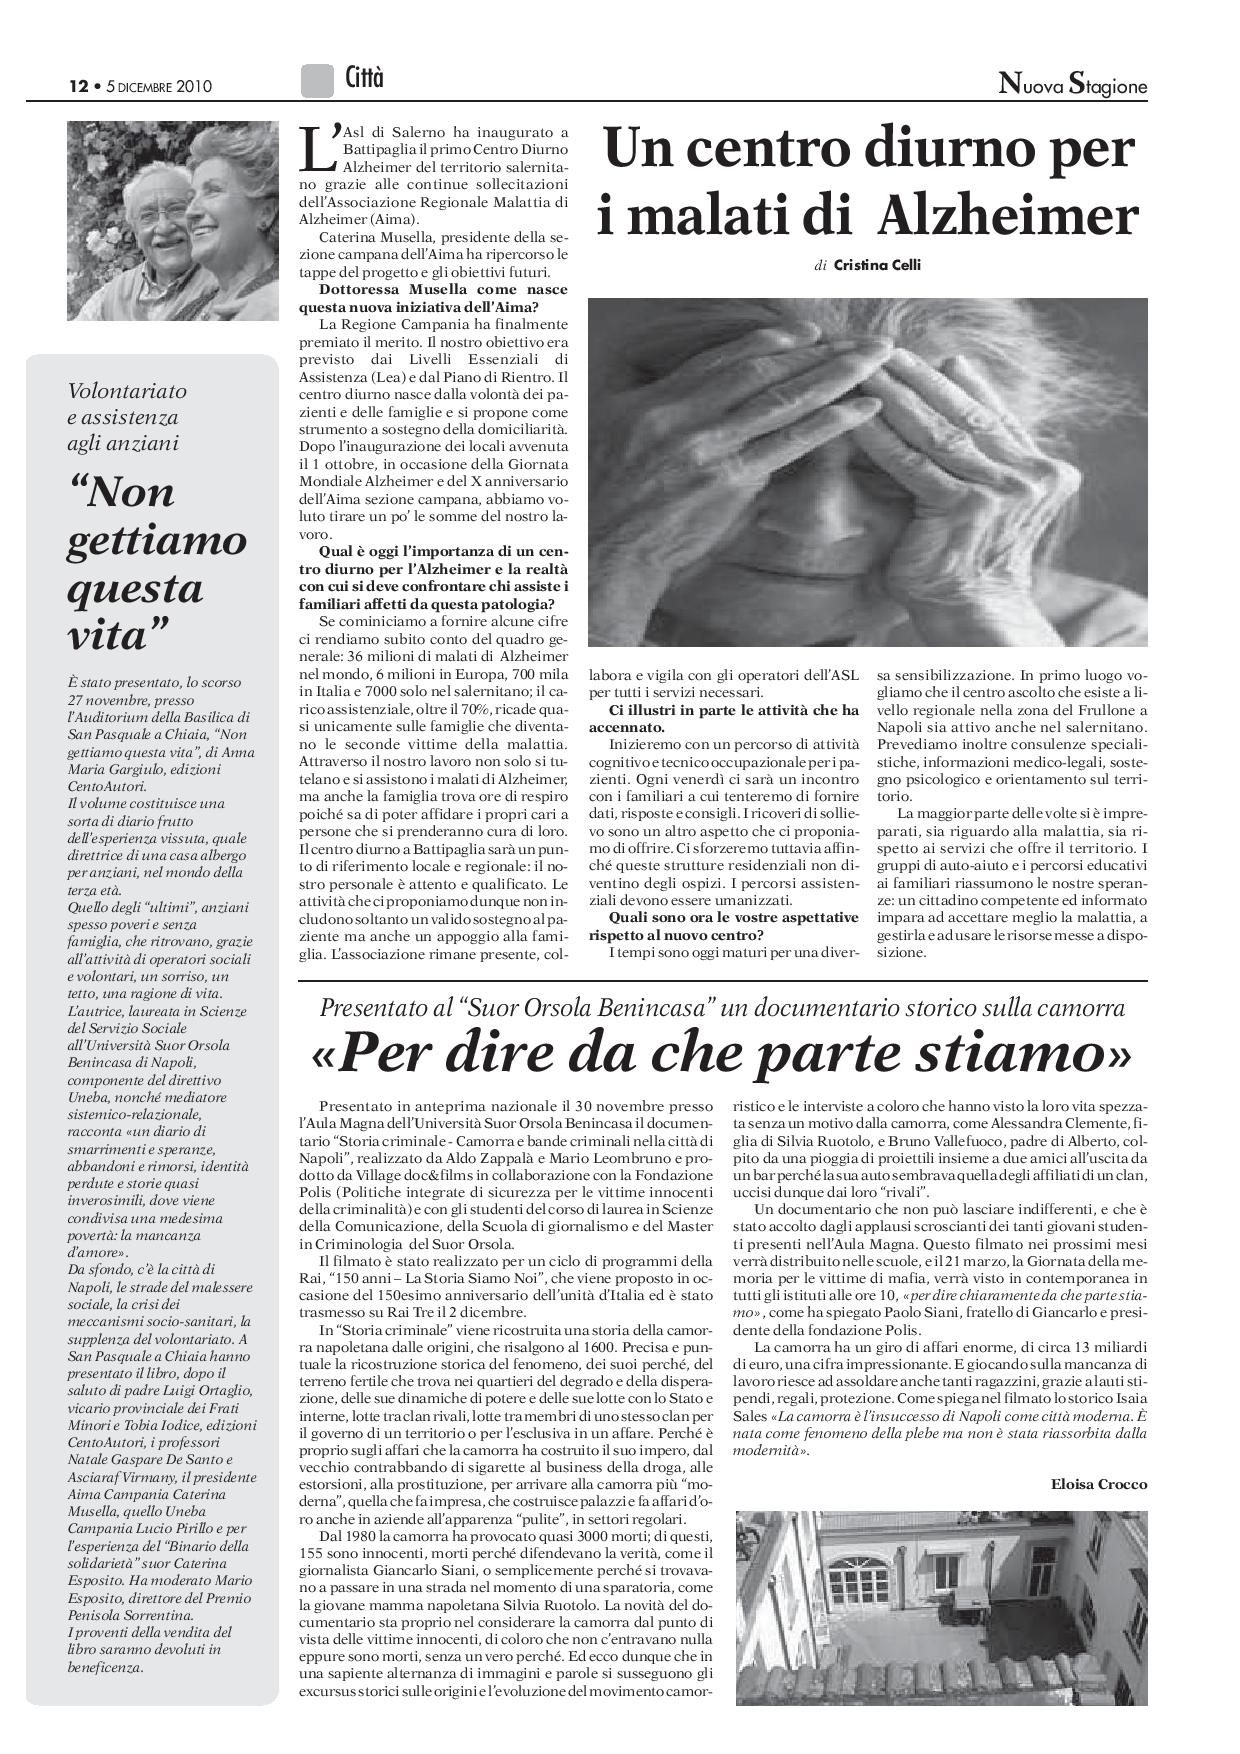 cristina celli 05-12-10 AIMA SU NUOVA STAGIONE pag.pdf-page-001 (1)